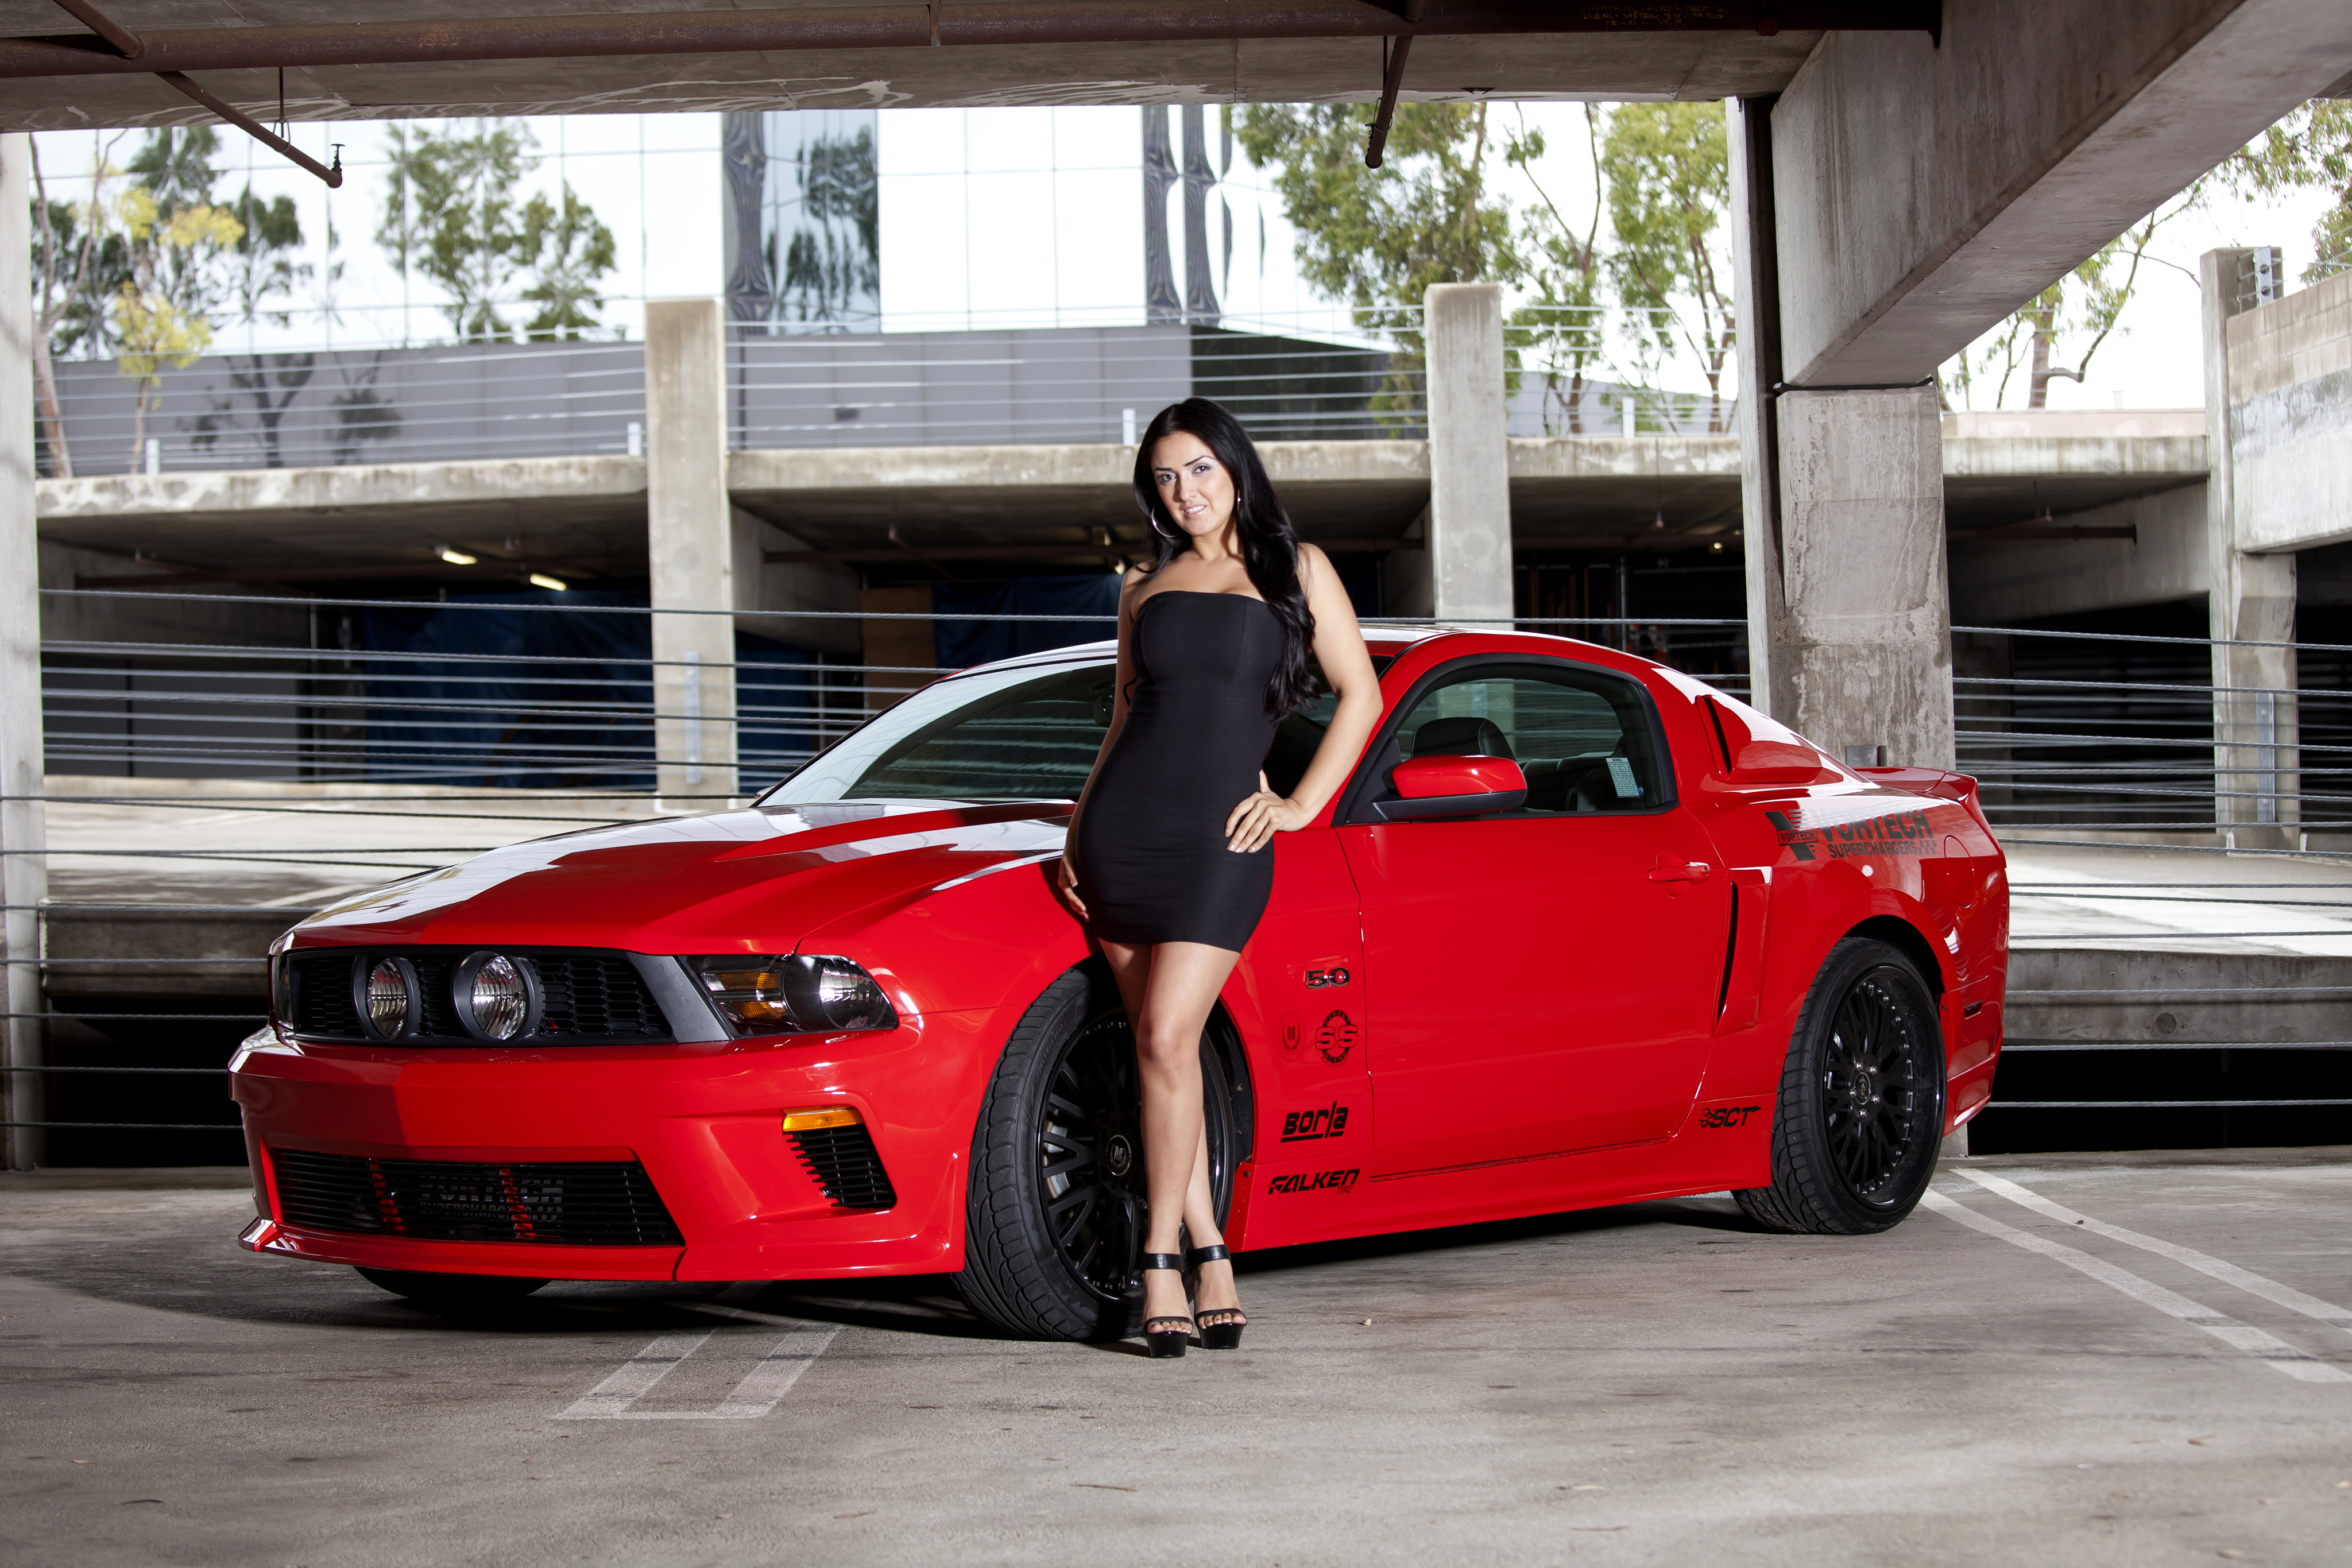 Ford Vortech Mustang GT Красный Автомобили Девушки фото авто, машины, машин...